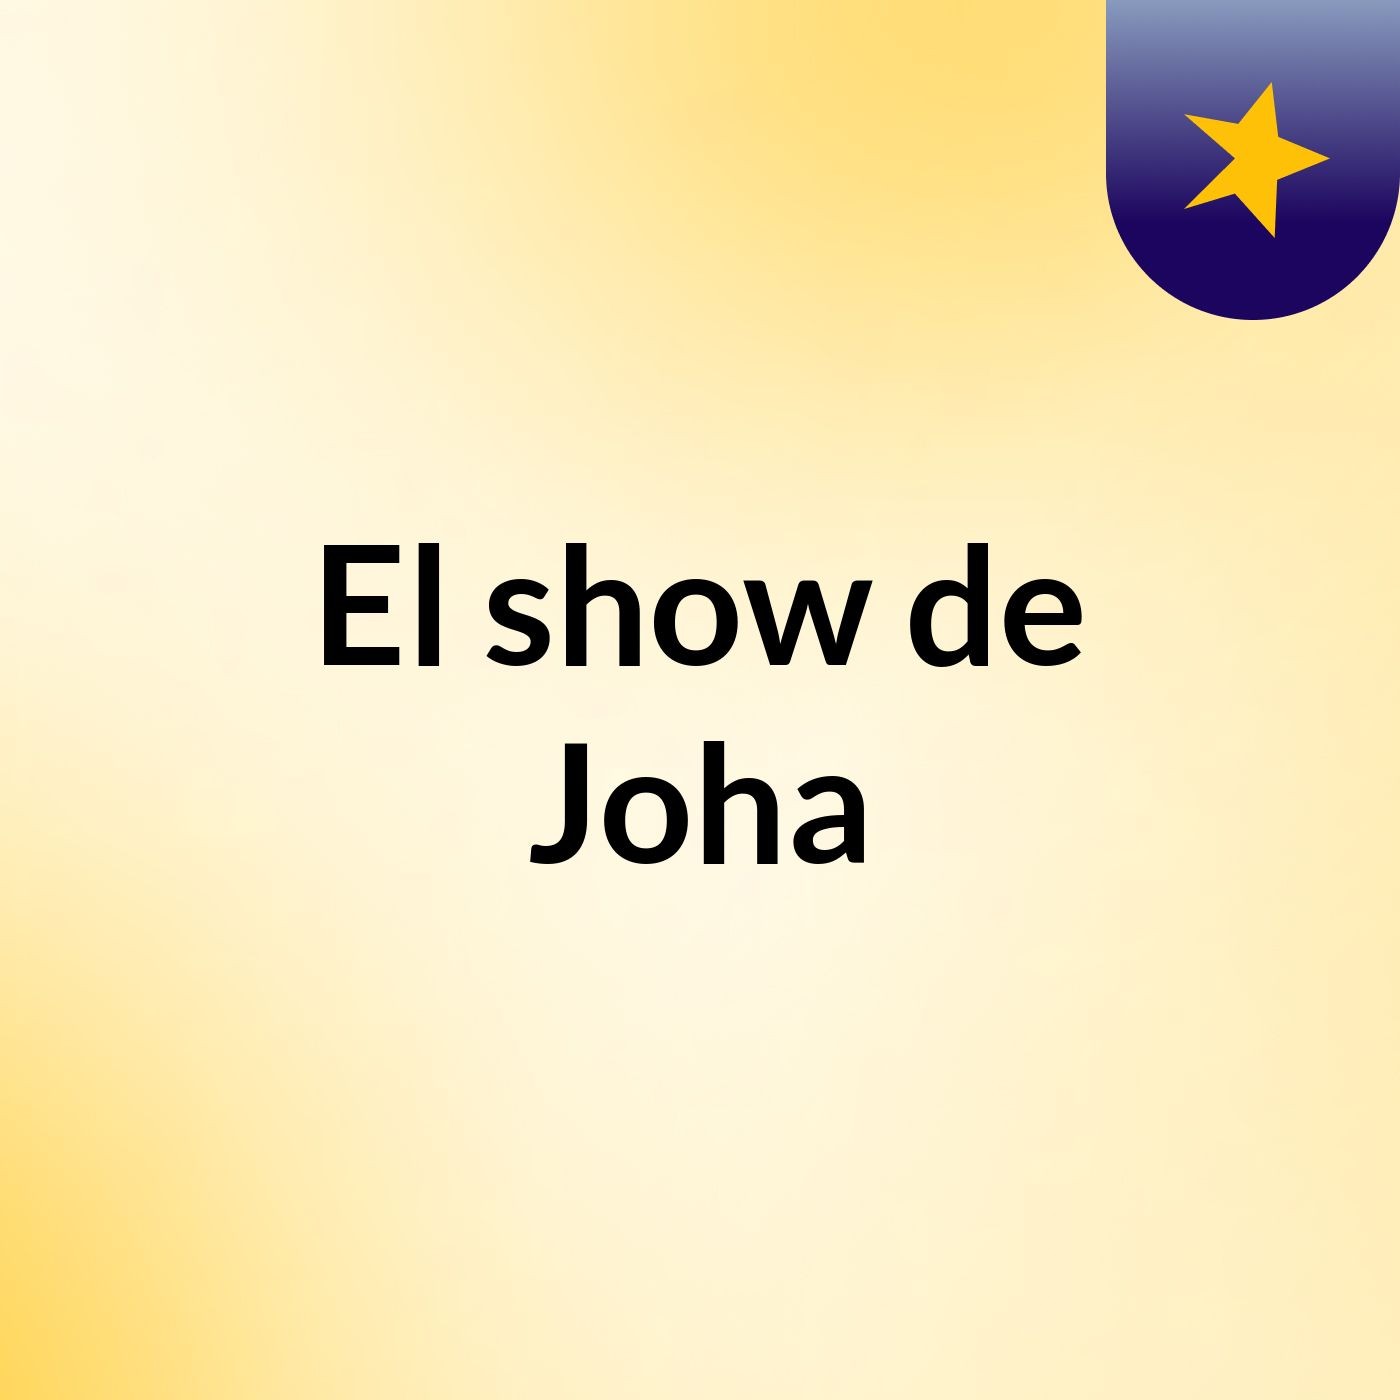 El show de Joha